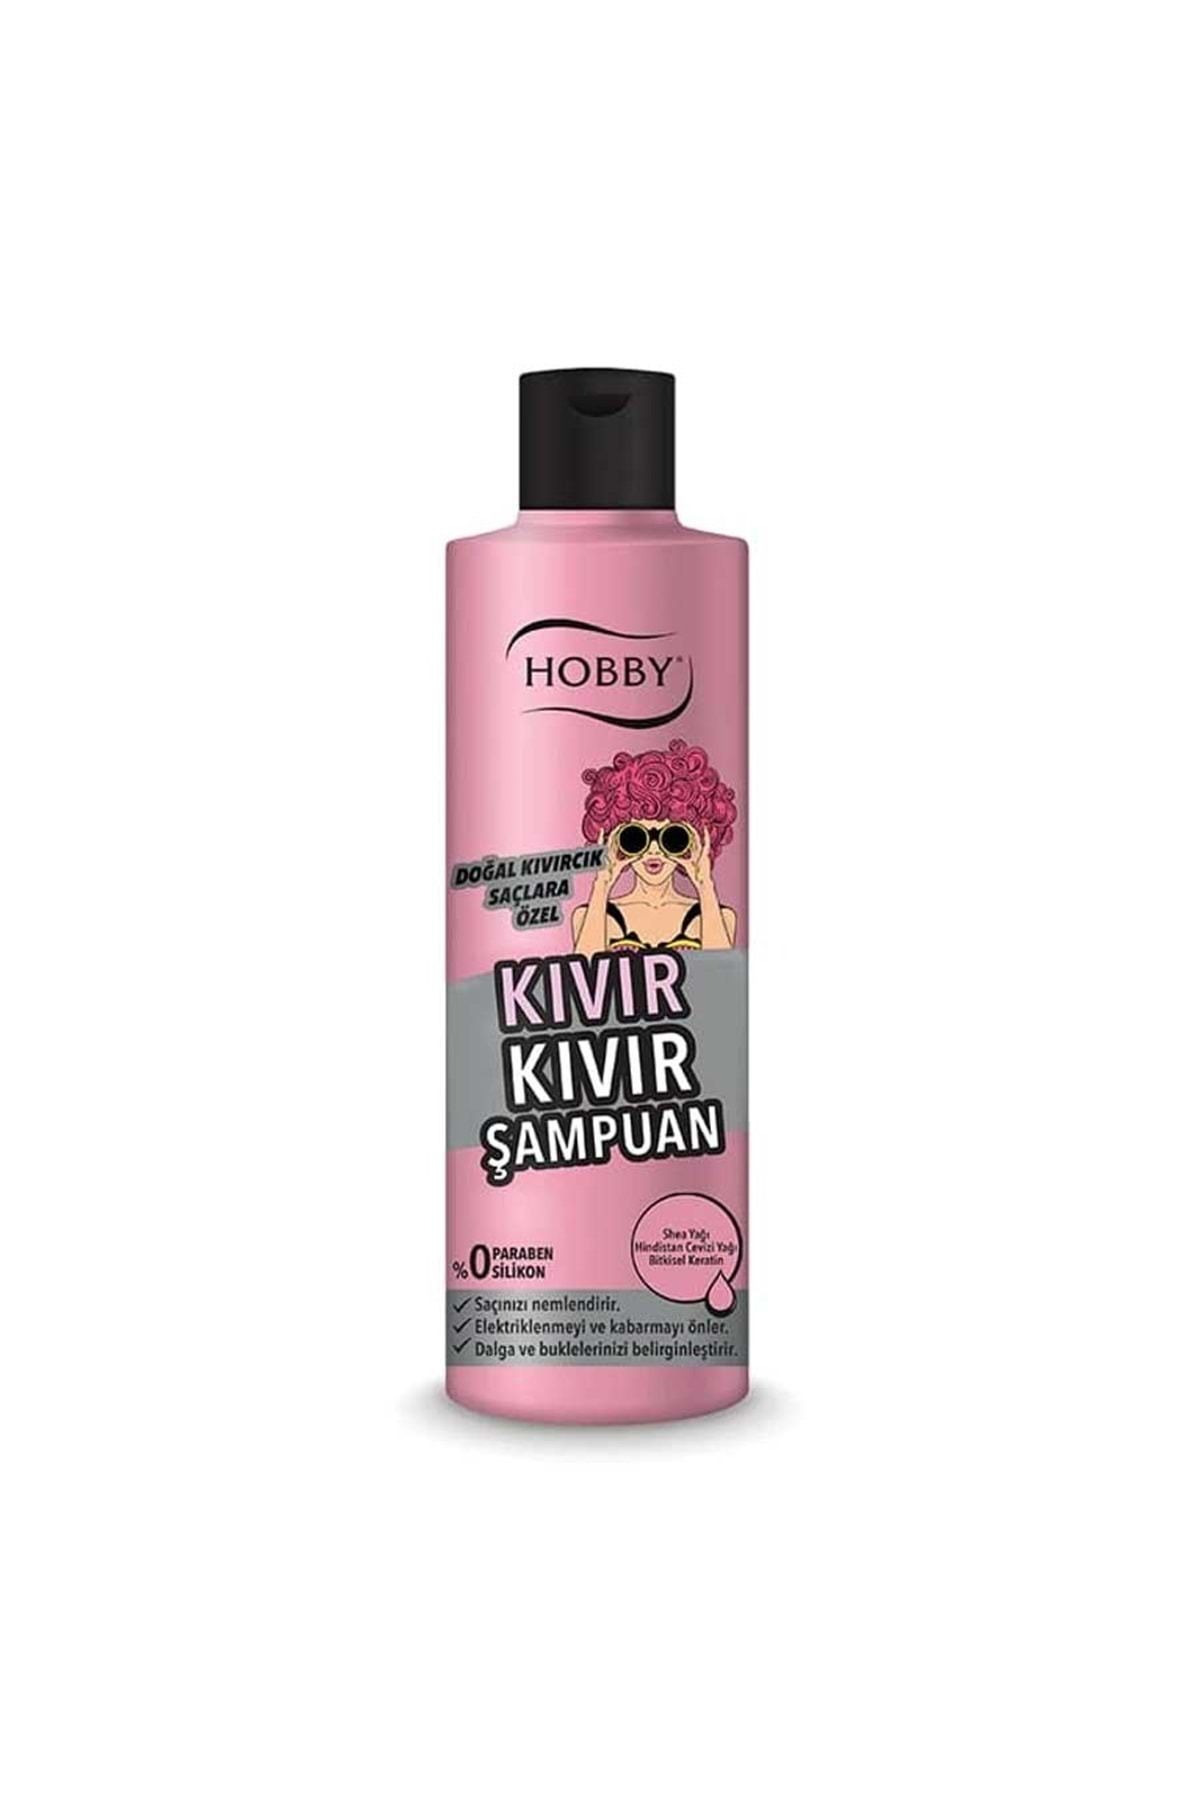 Hobby Şampuan Kıvır Kıvır Doğal Kıvırcık Saçlara Özel 250 ml